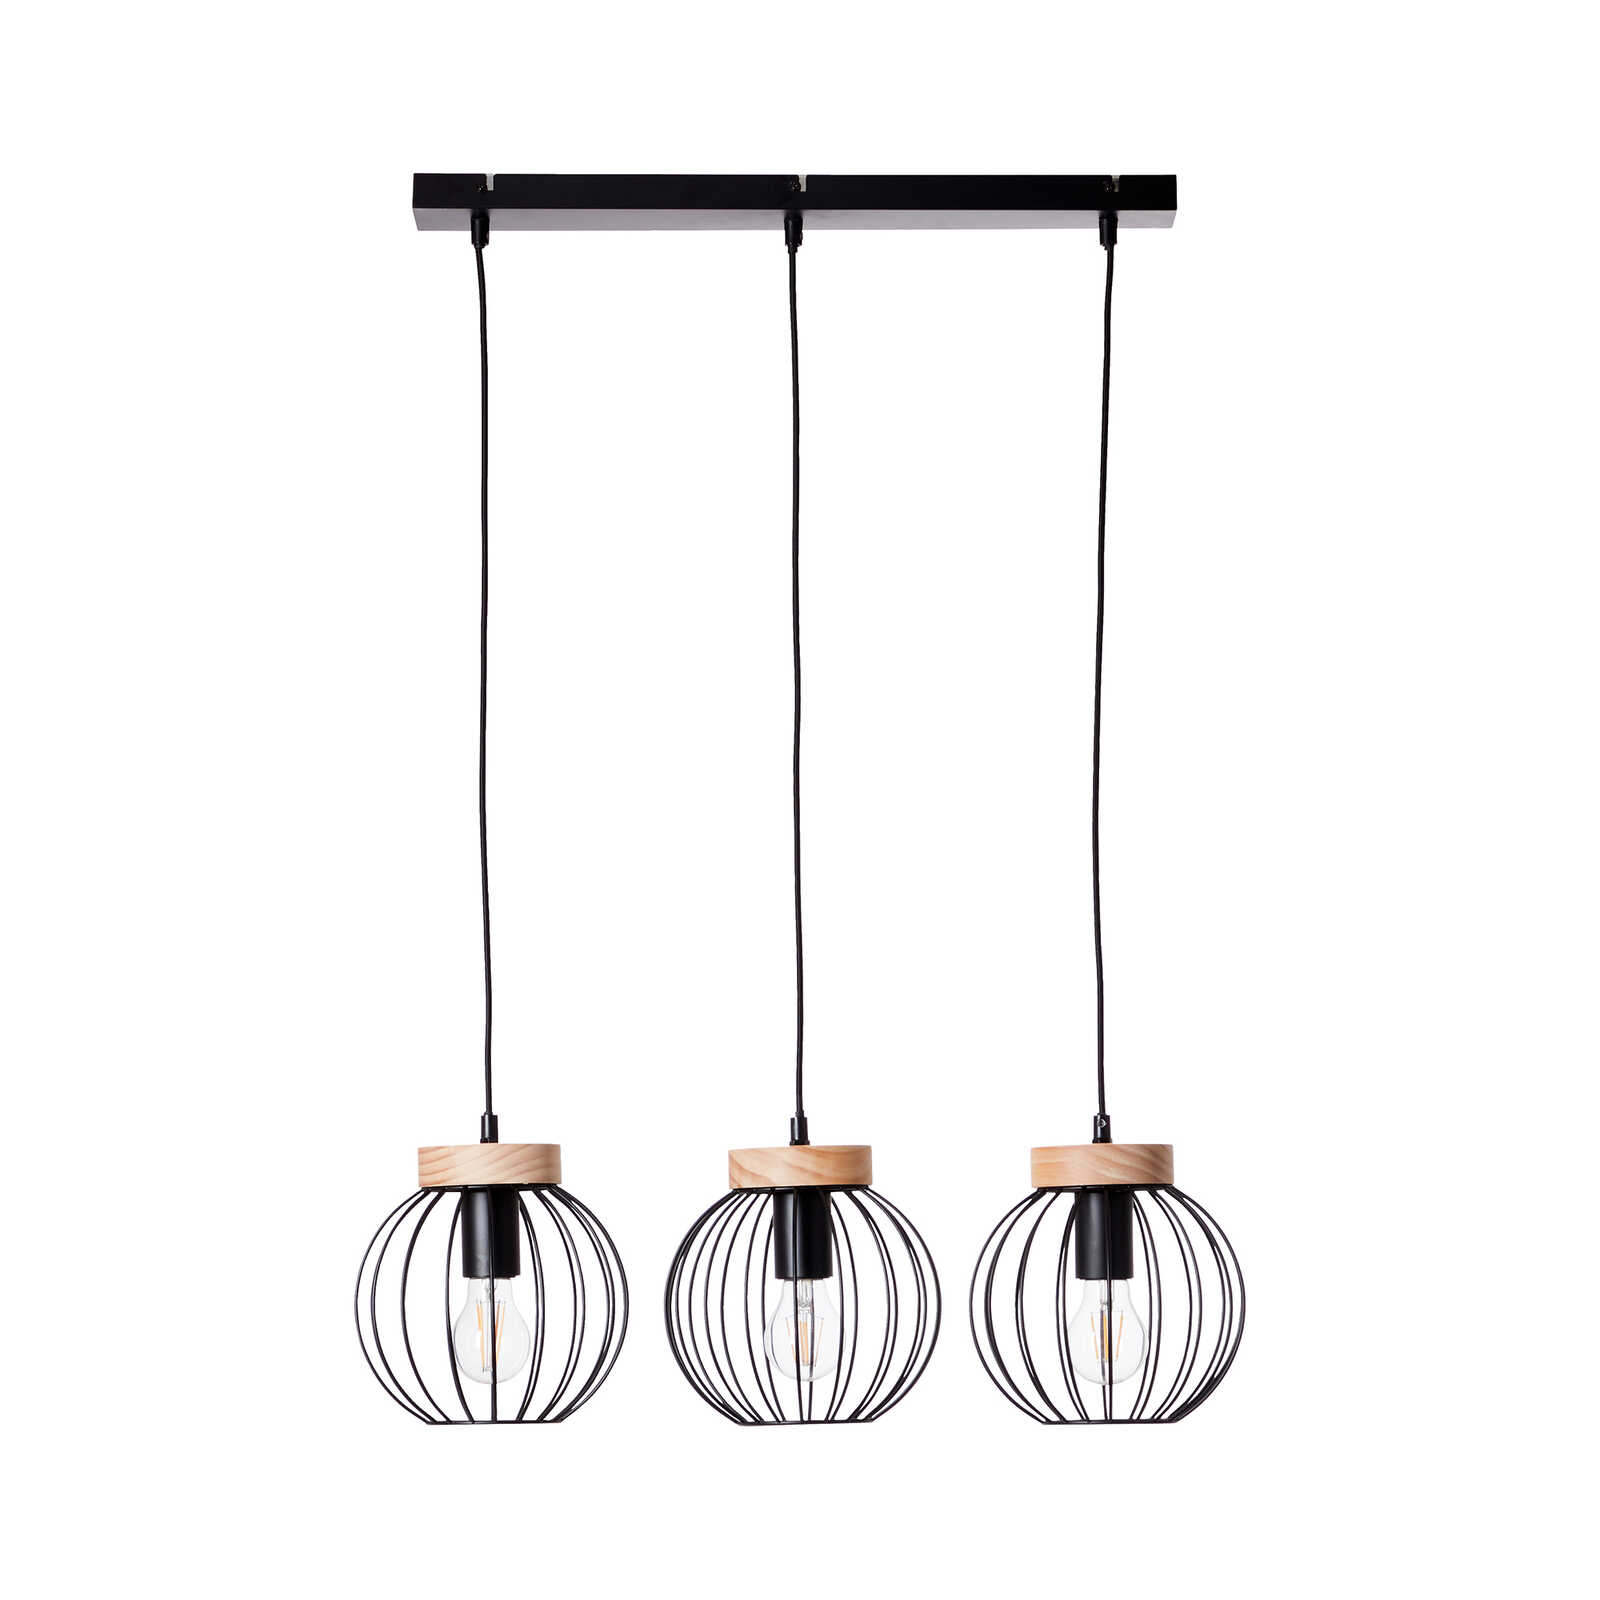 Houten hanglamp - Oliver 3 - Bruin
